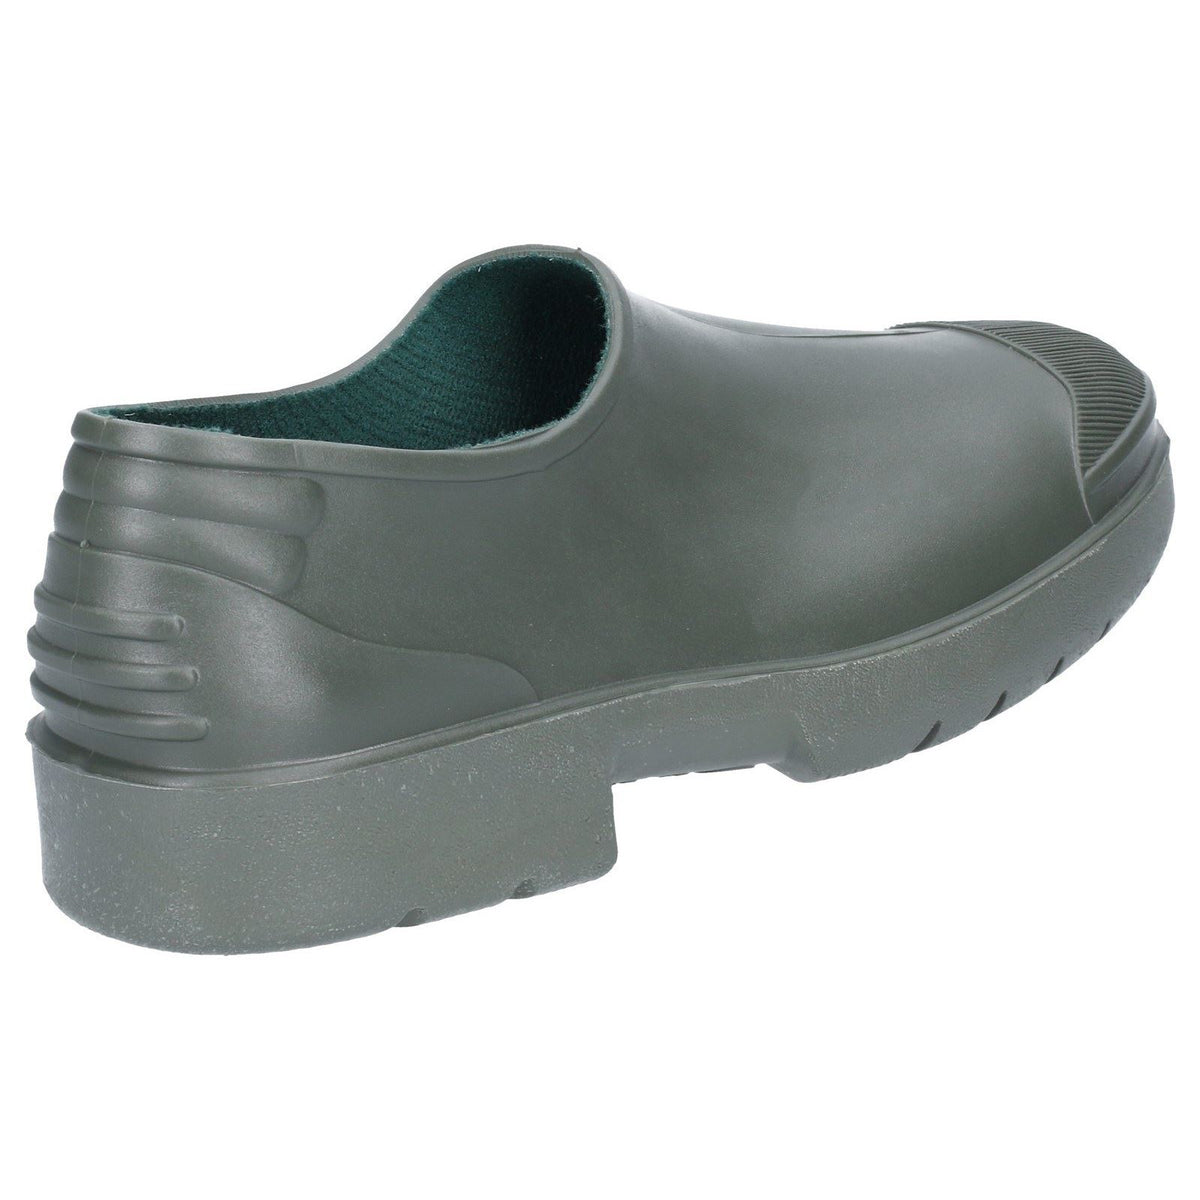 Dikamar Primera Gardening Shoes